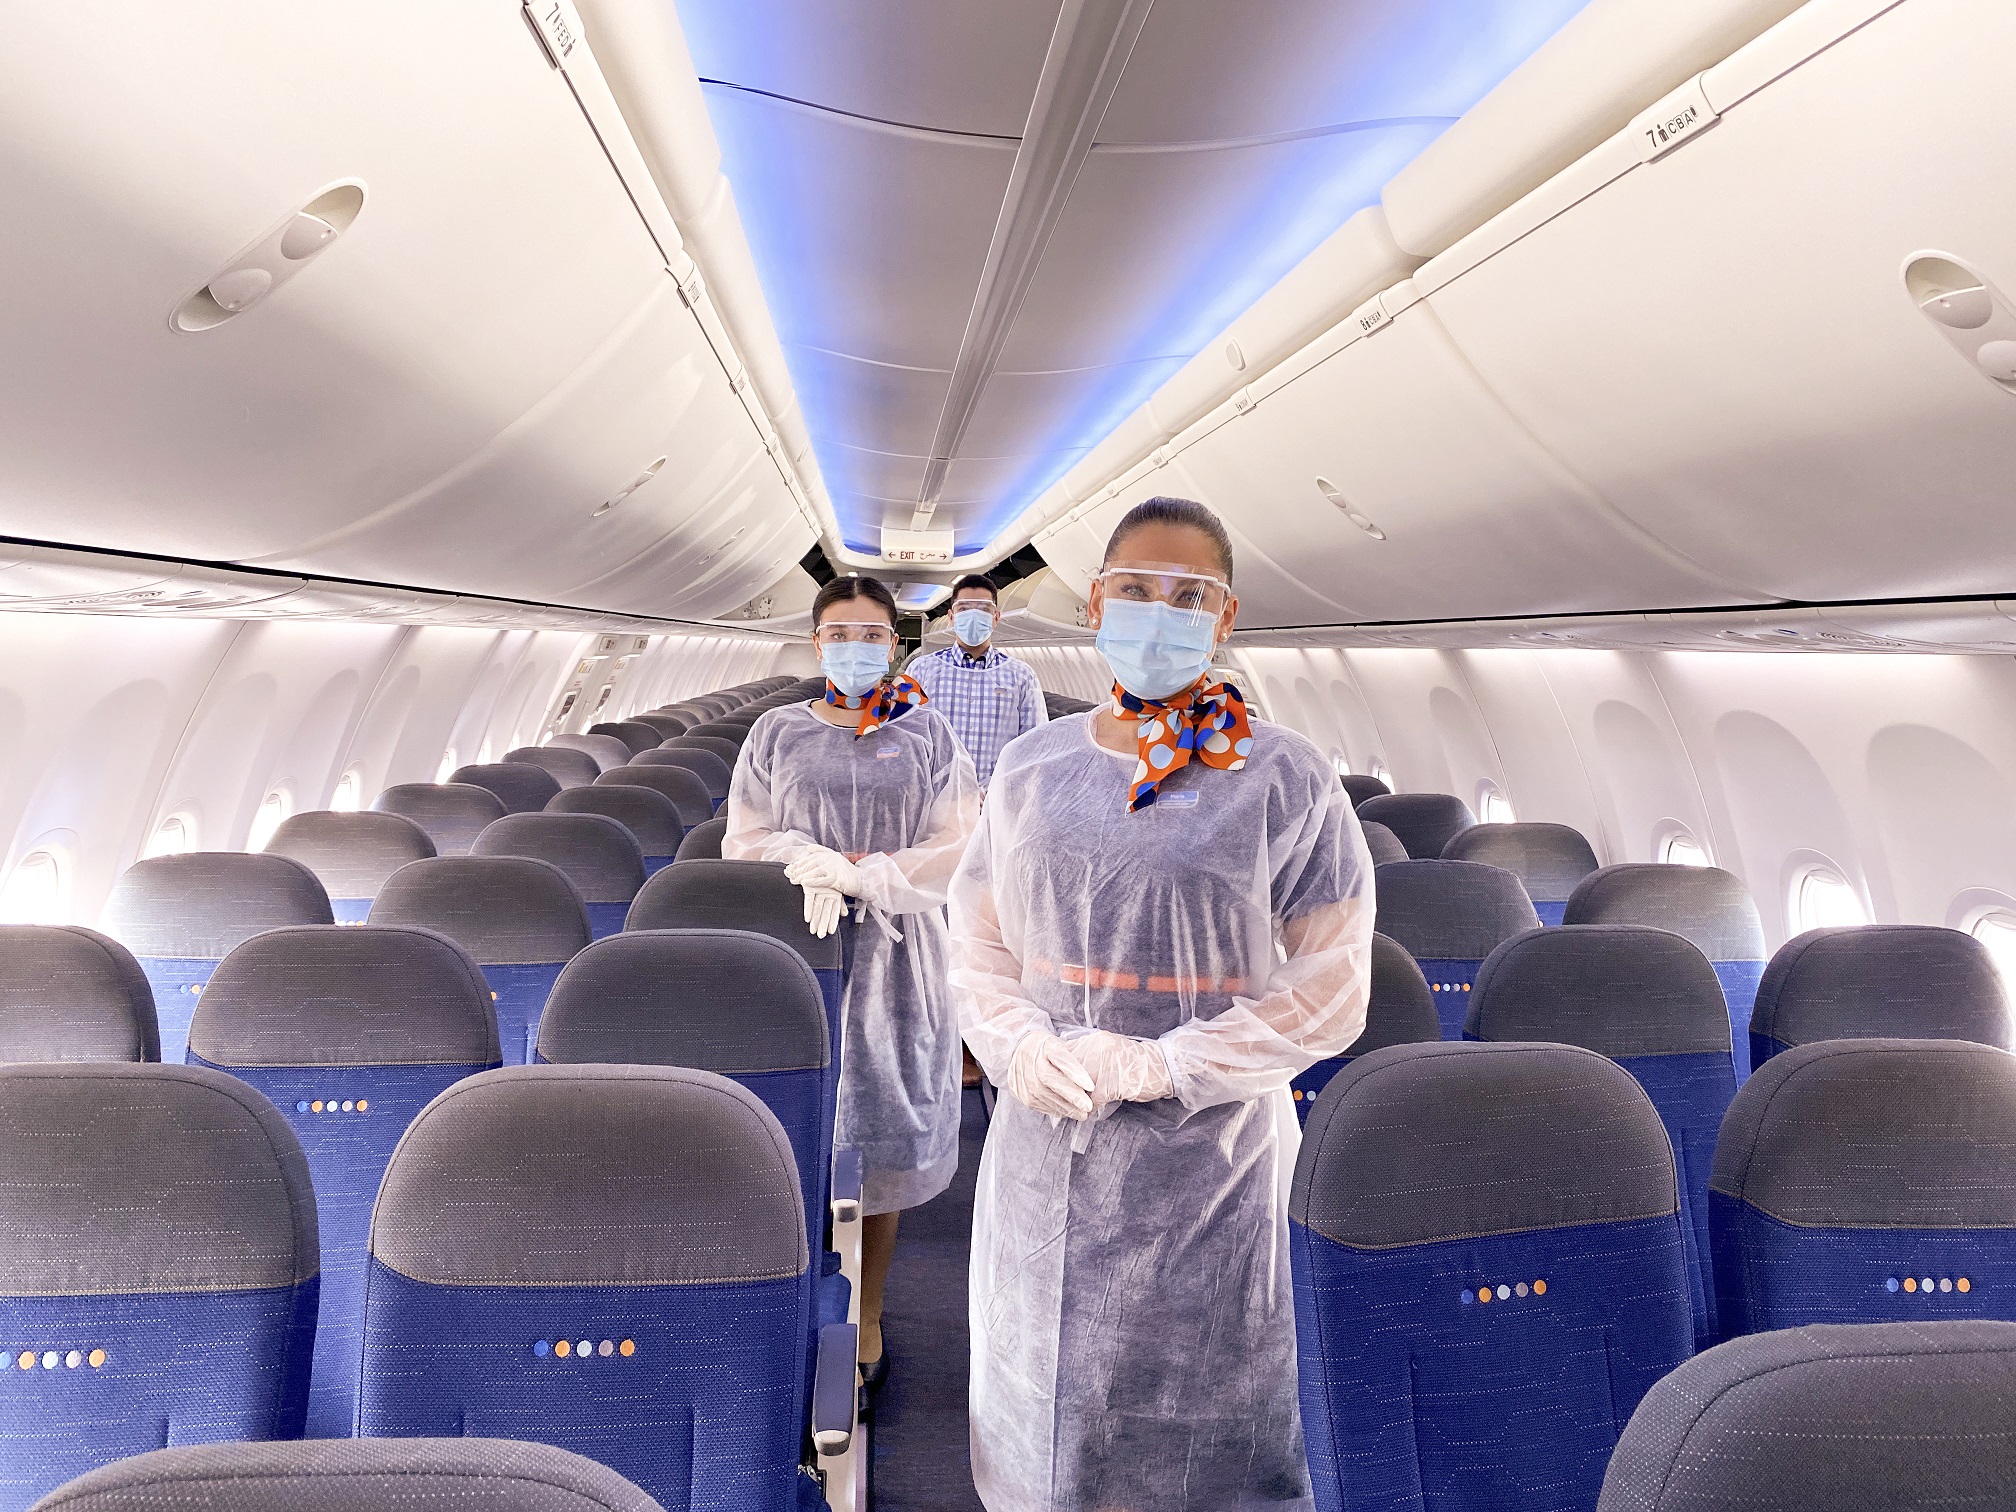 فلاي دبي تستخدم تقنيات شركة إيه إس دي المتطورة لتنظيف أغطية مقاعد الطائرات